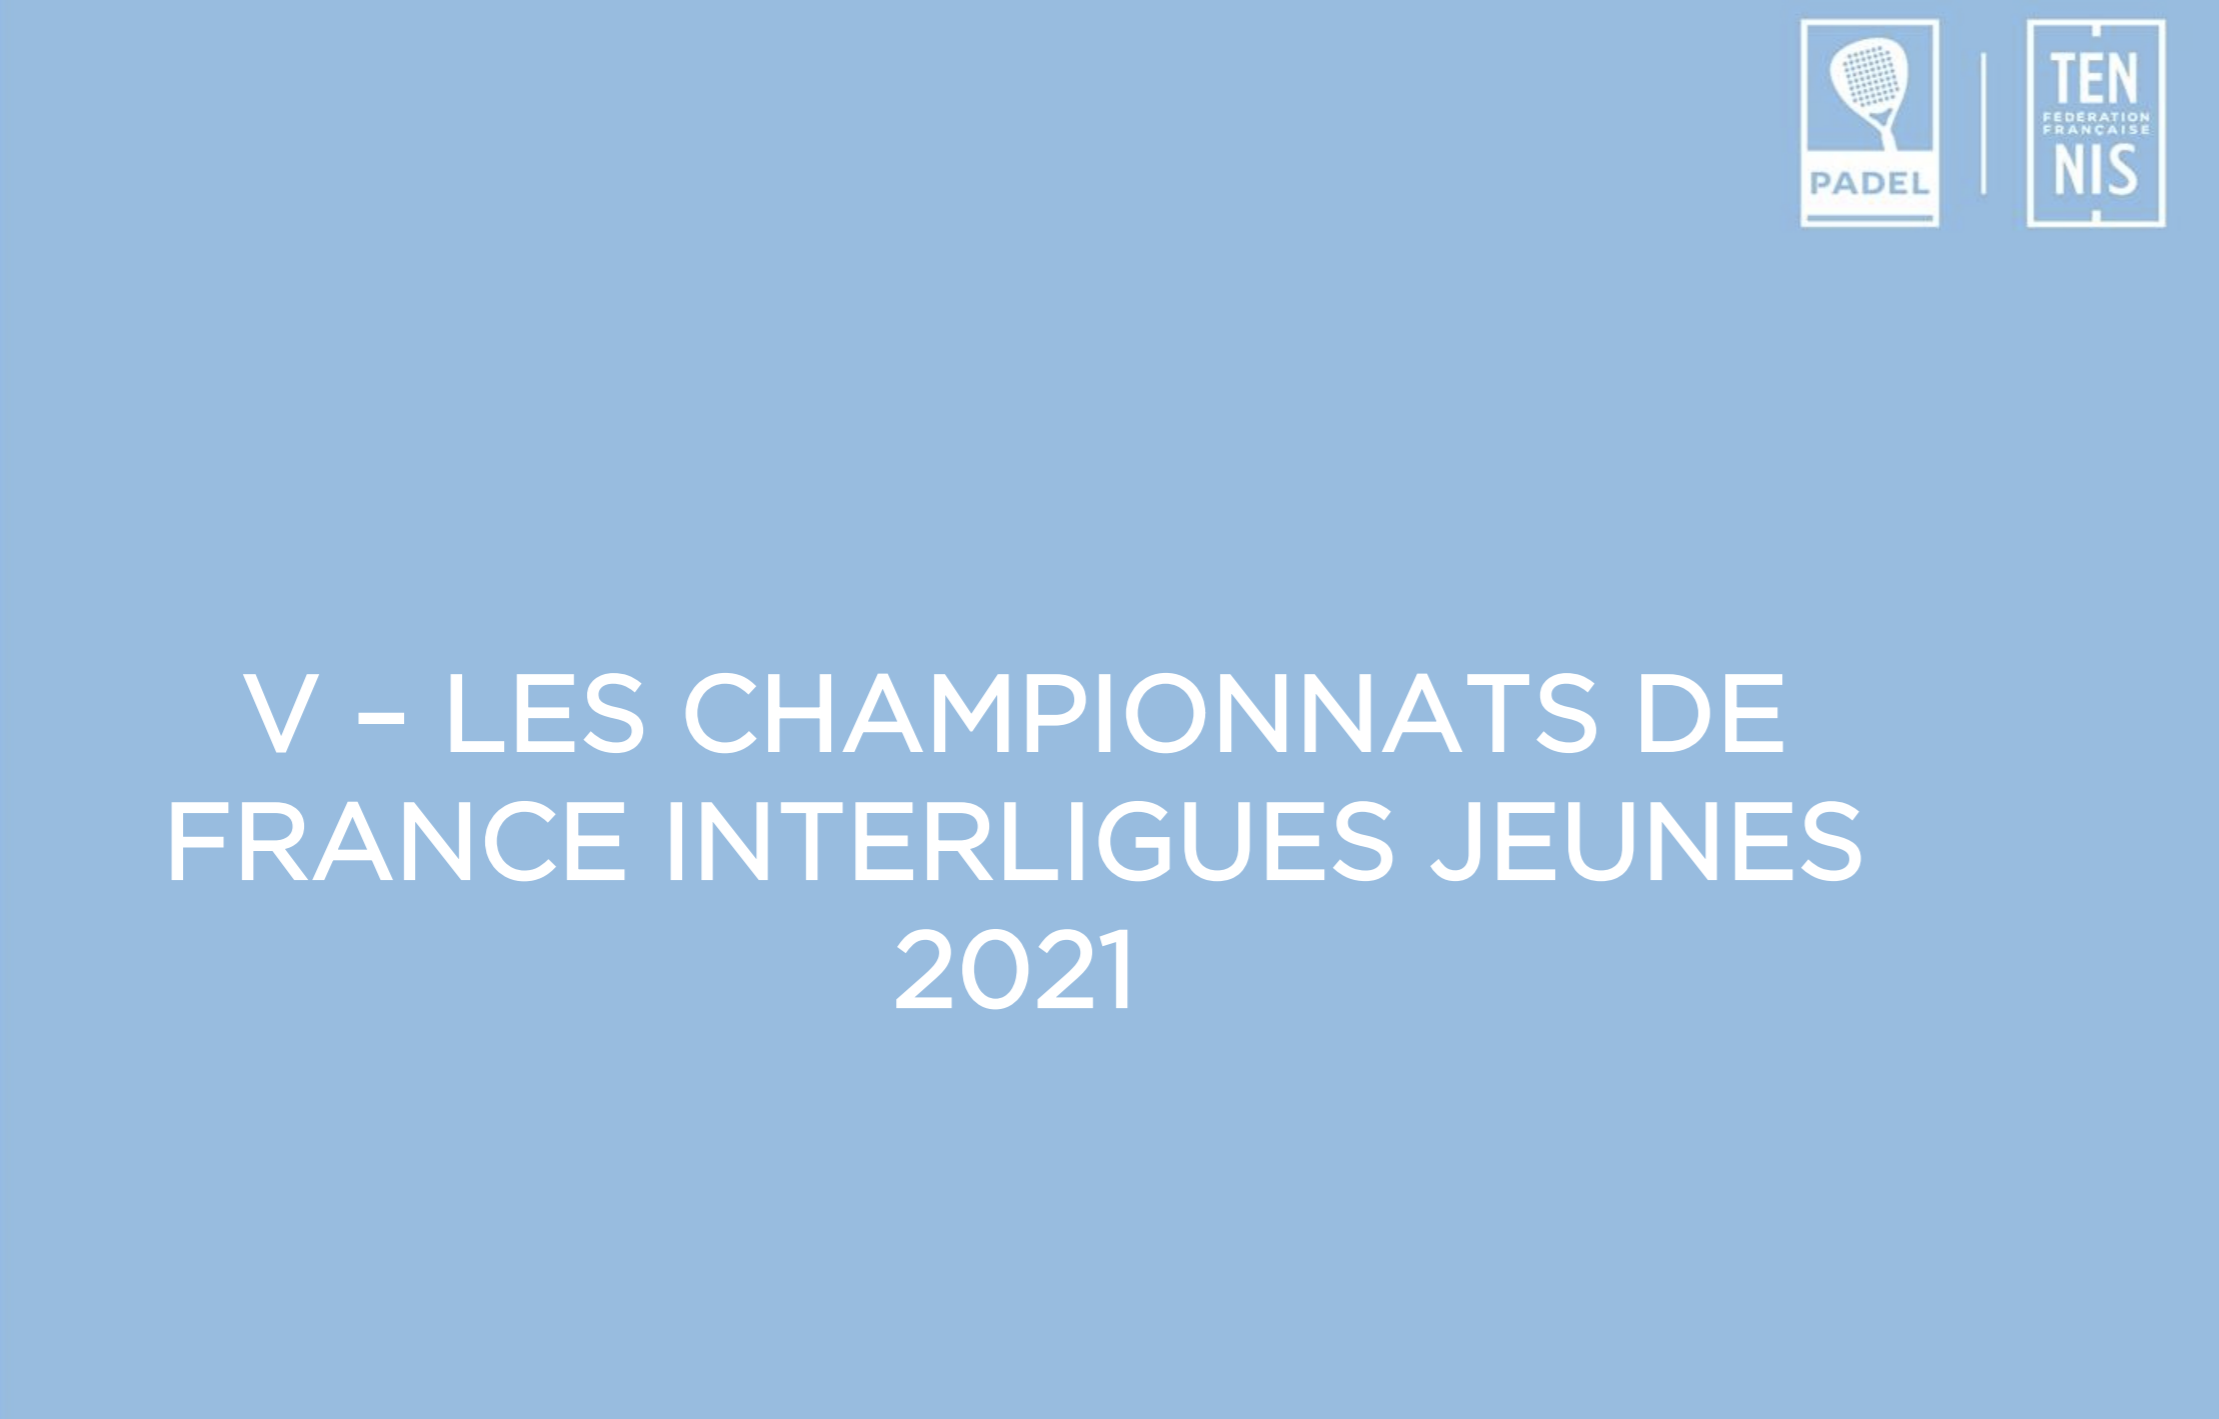 Franska ungdomsmästerskap 2021: 18 och 19 september